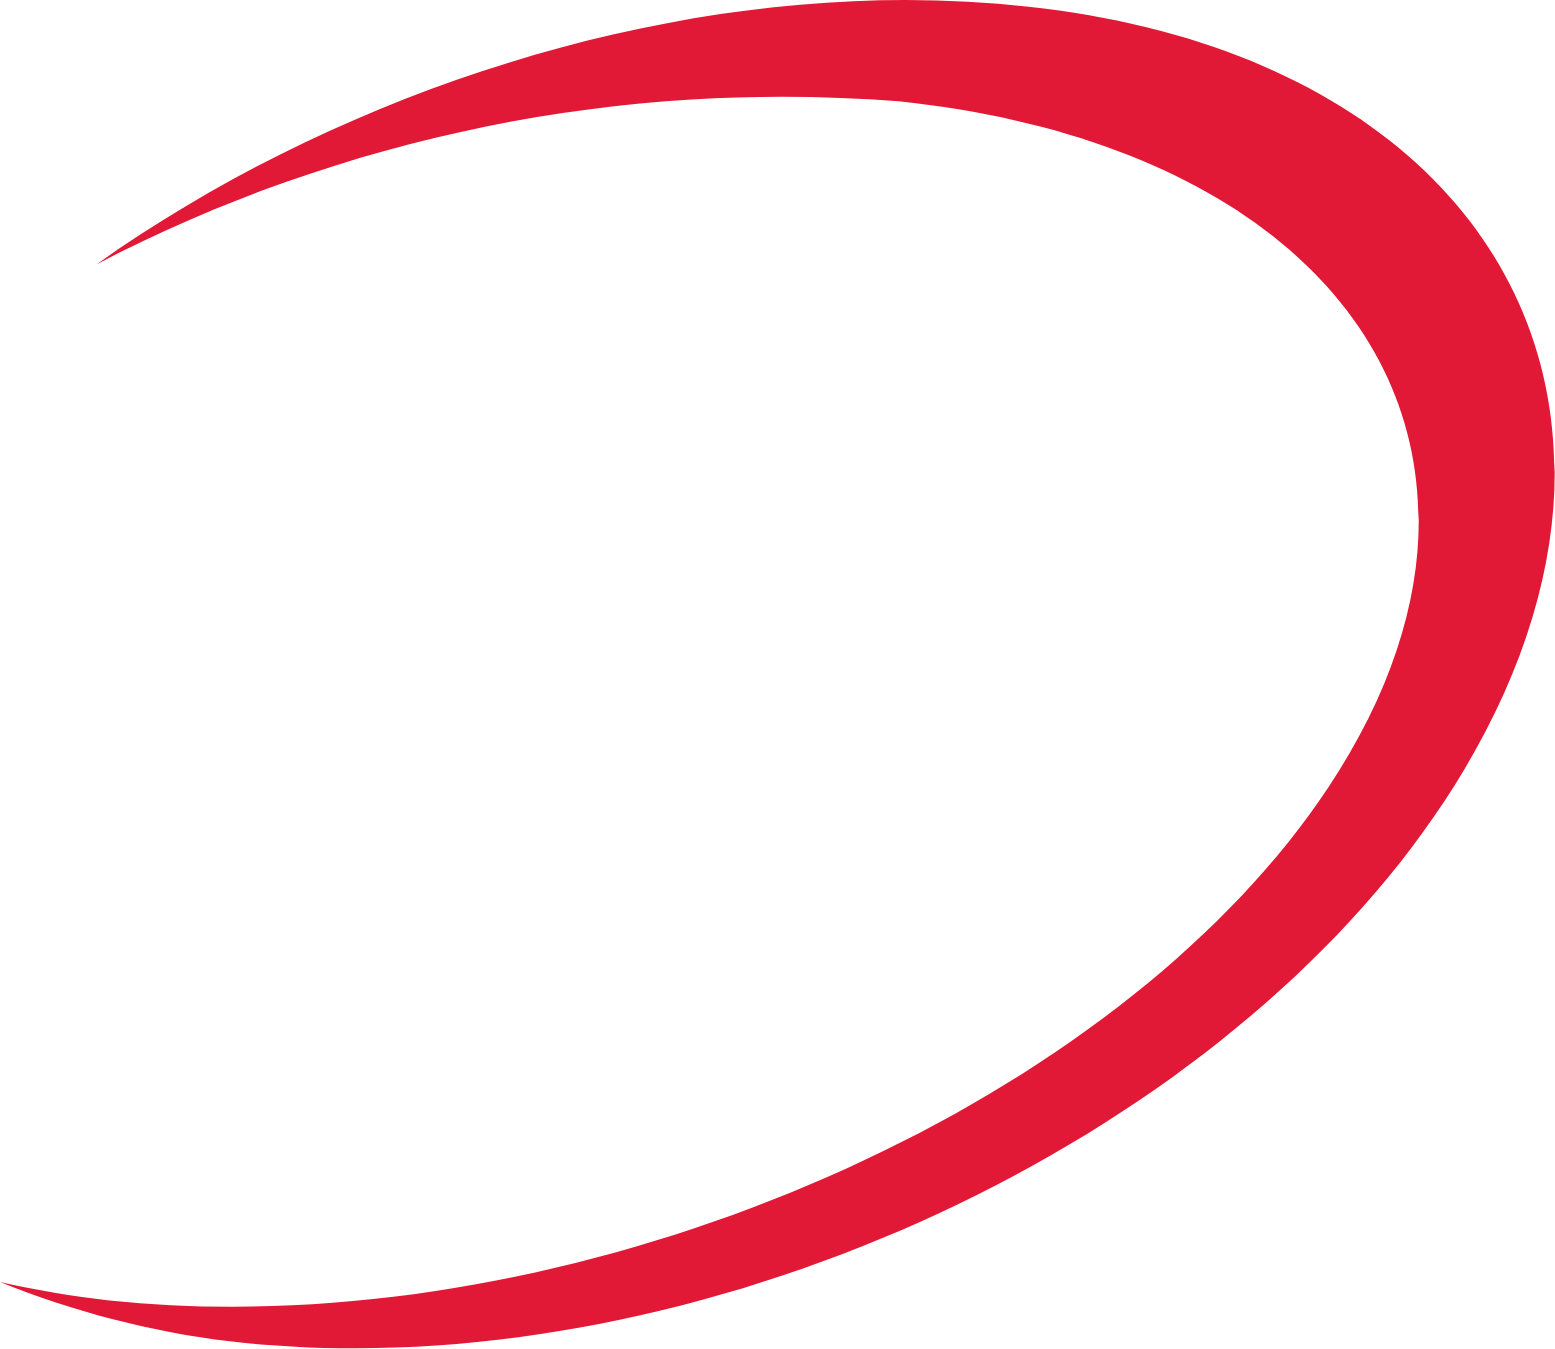 Ceragon Networks logo (PNG transparent)